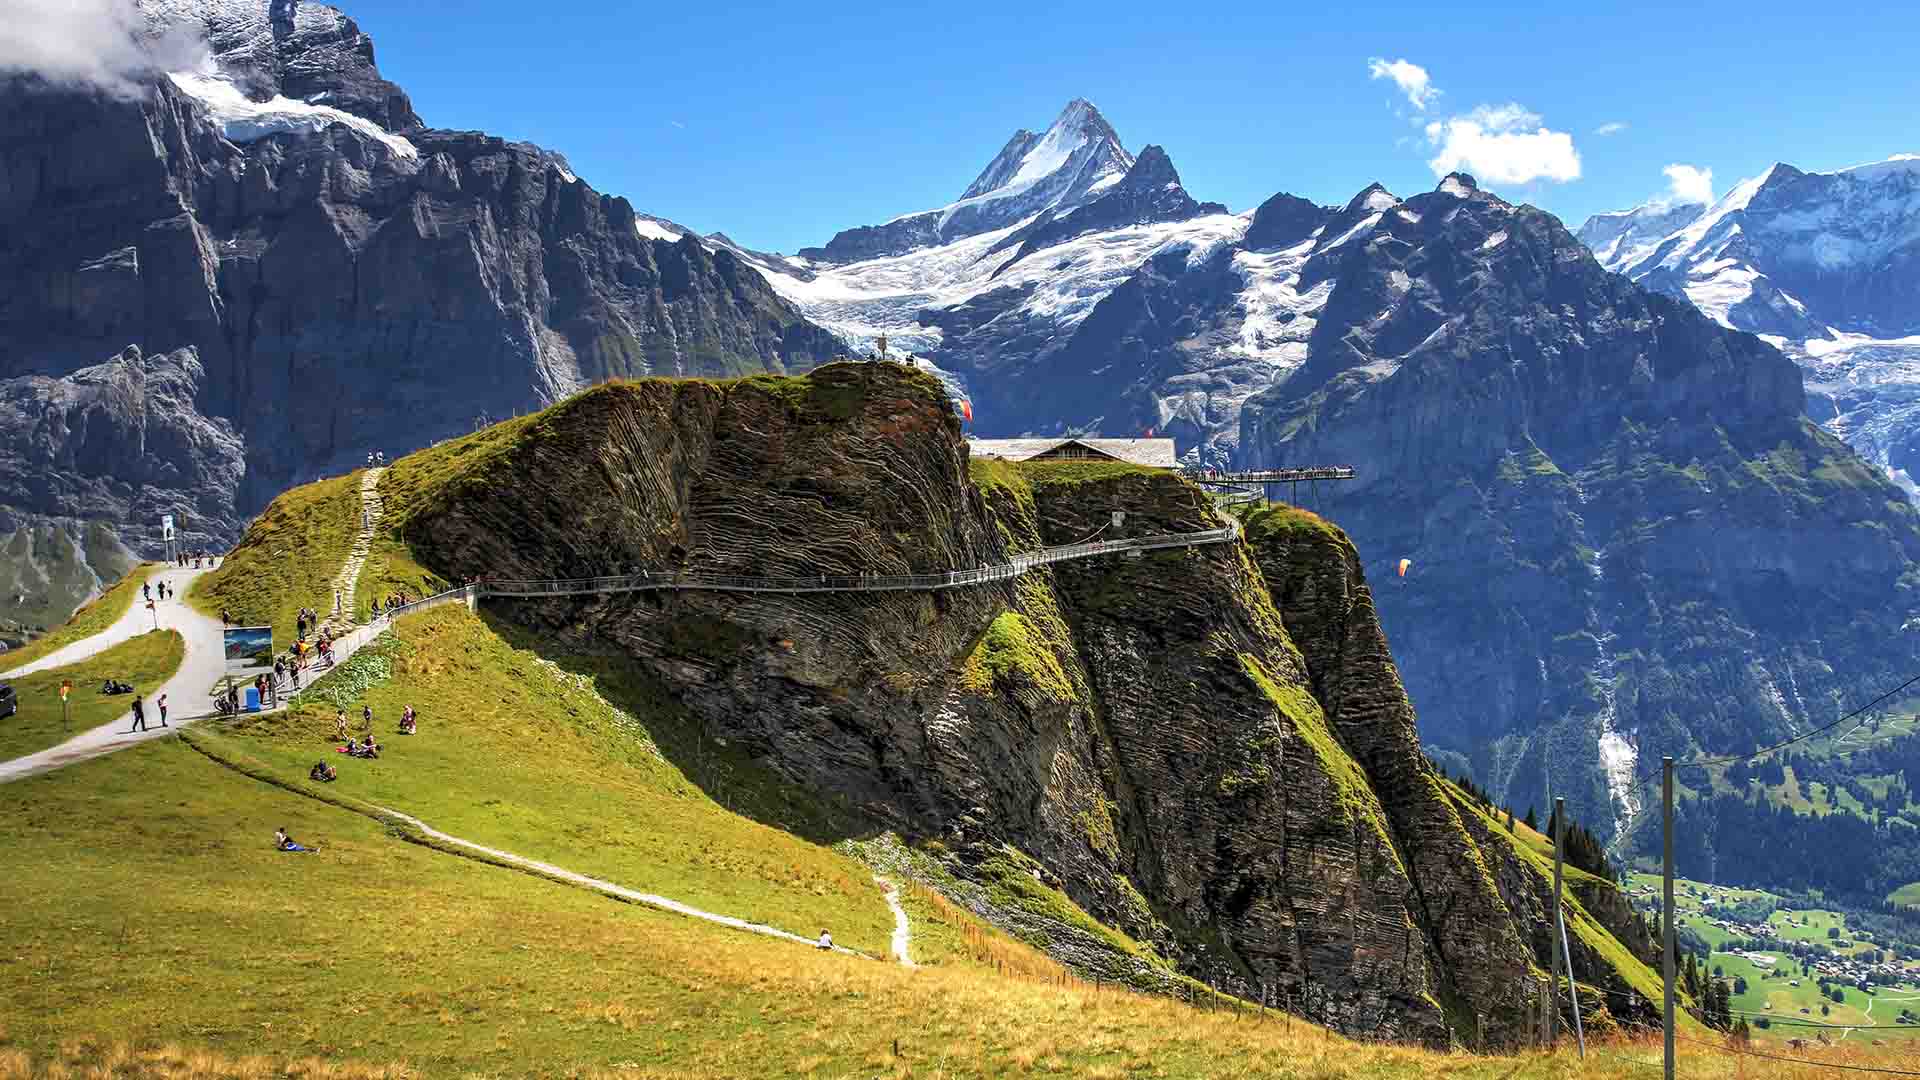 First cliff walk, Grindelwald, Switzerland